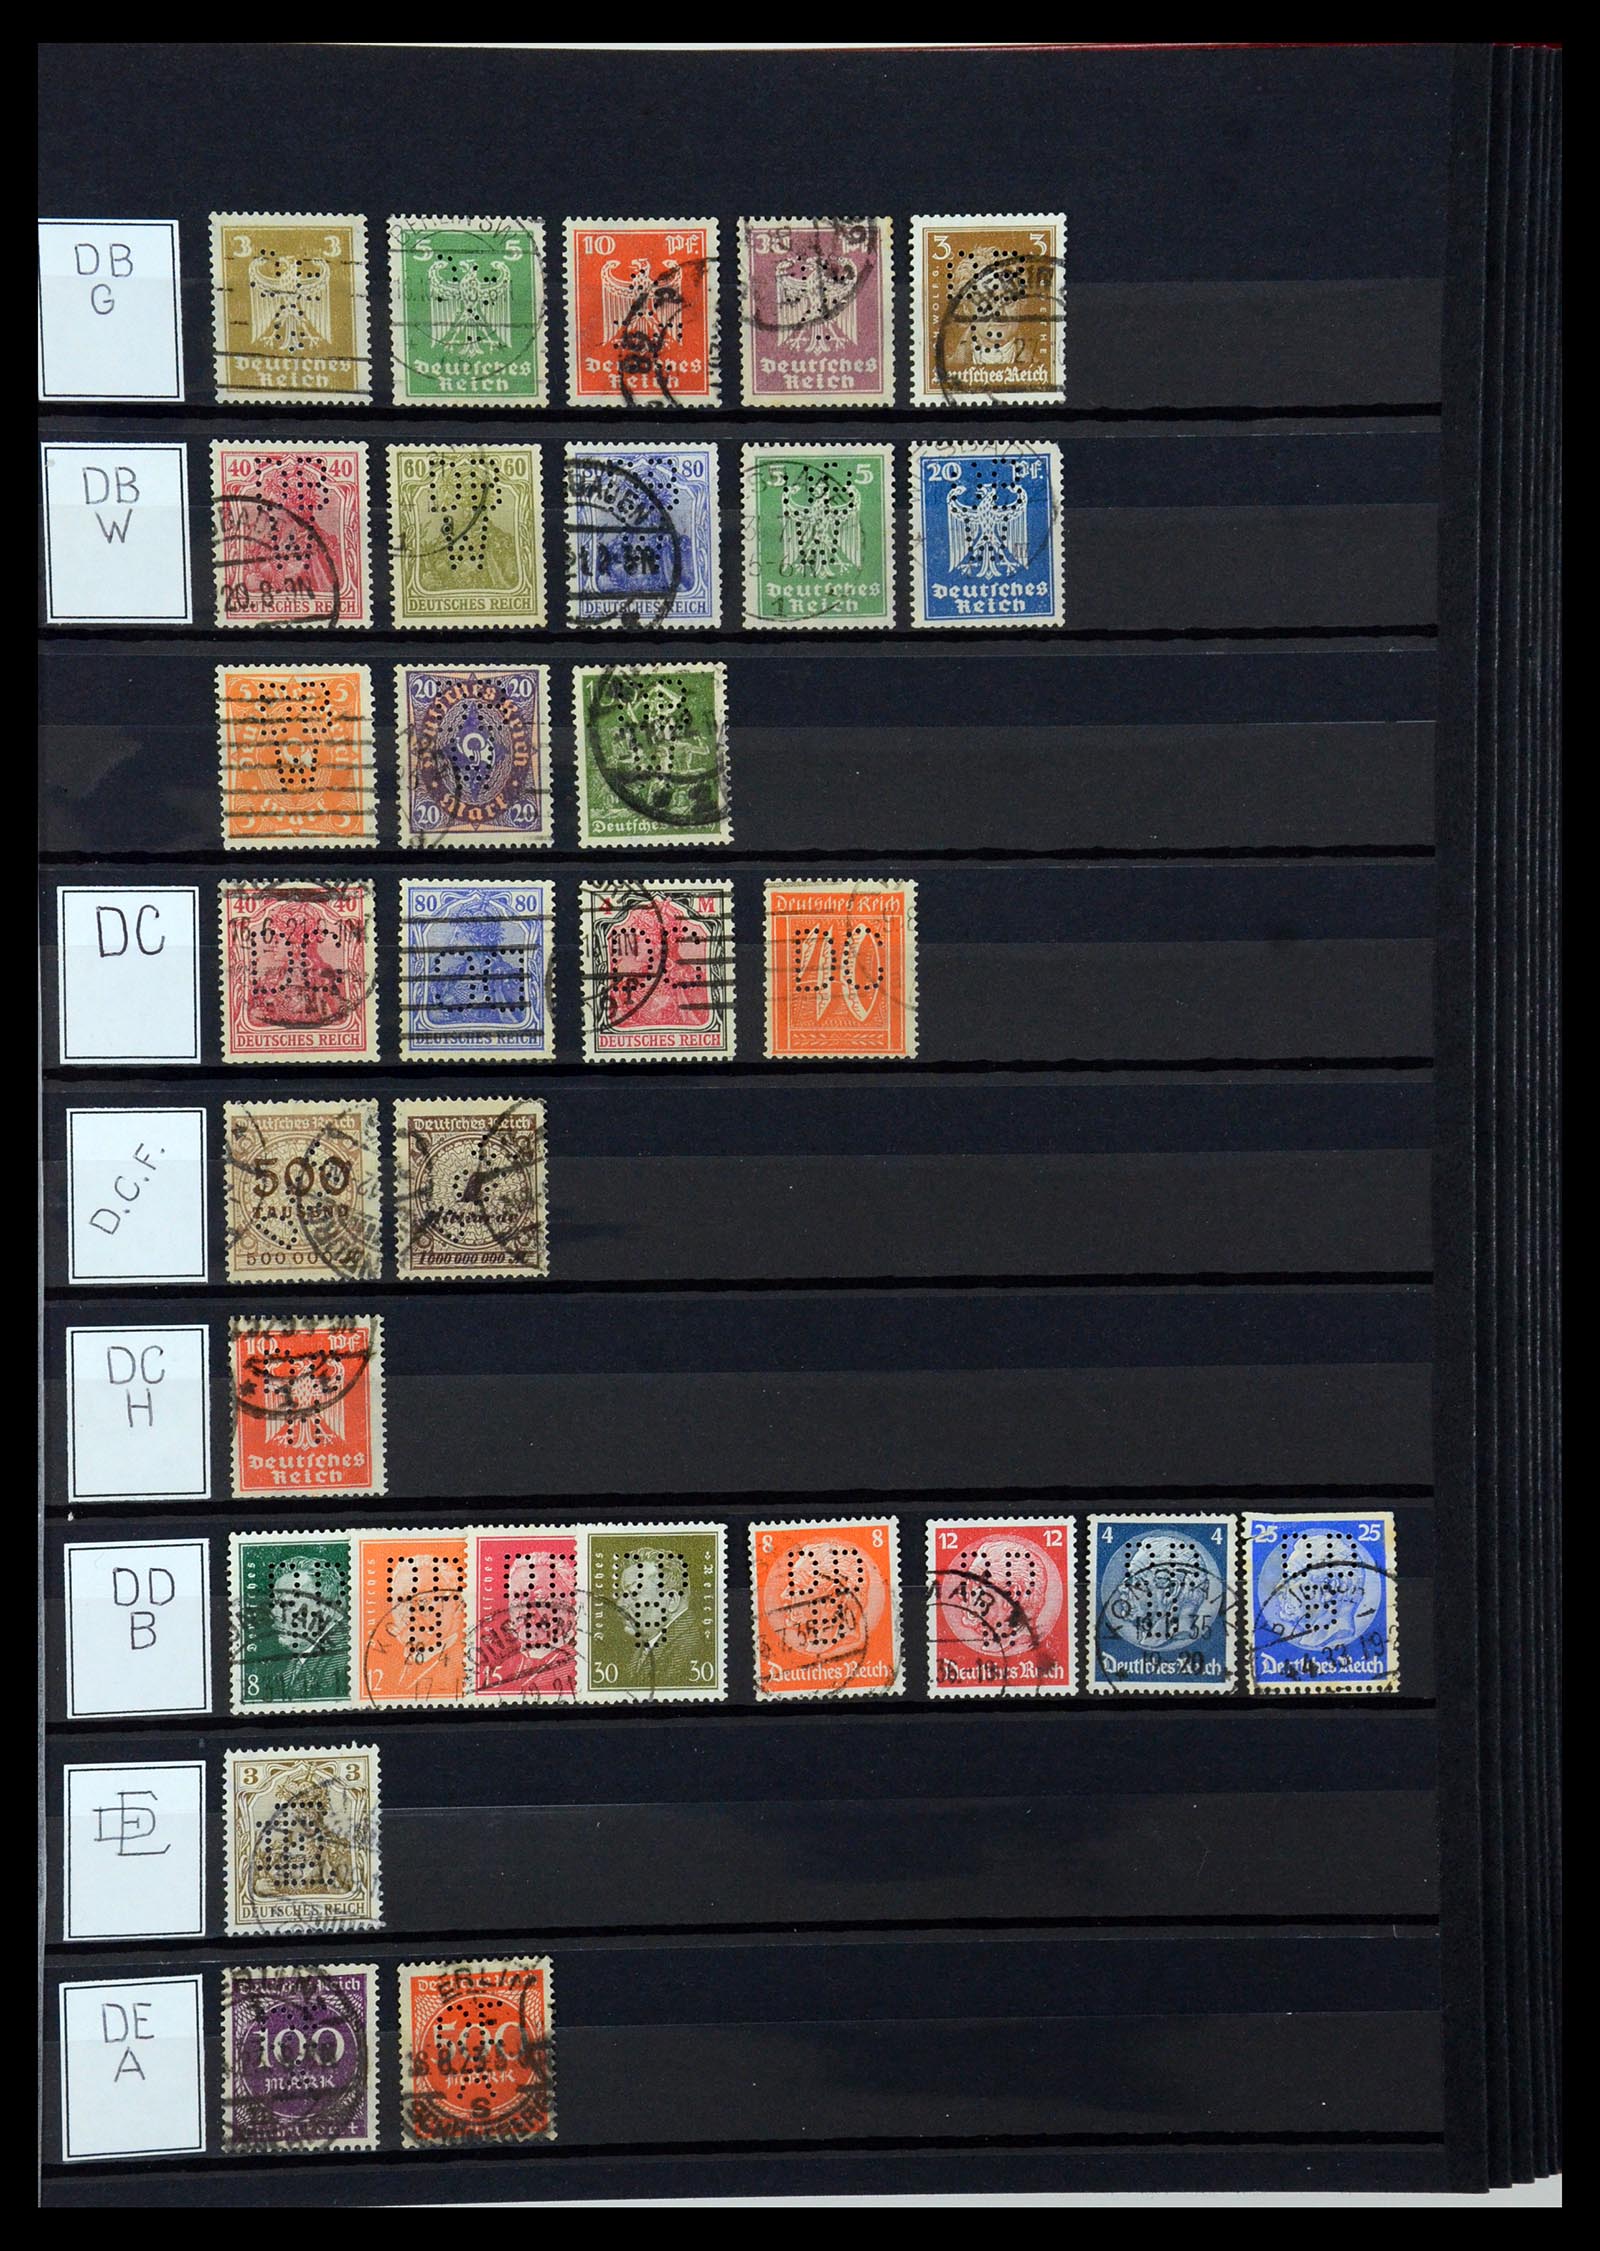 36405 093 - Stamp collection 36405 German Reich perfins 1880-1945.